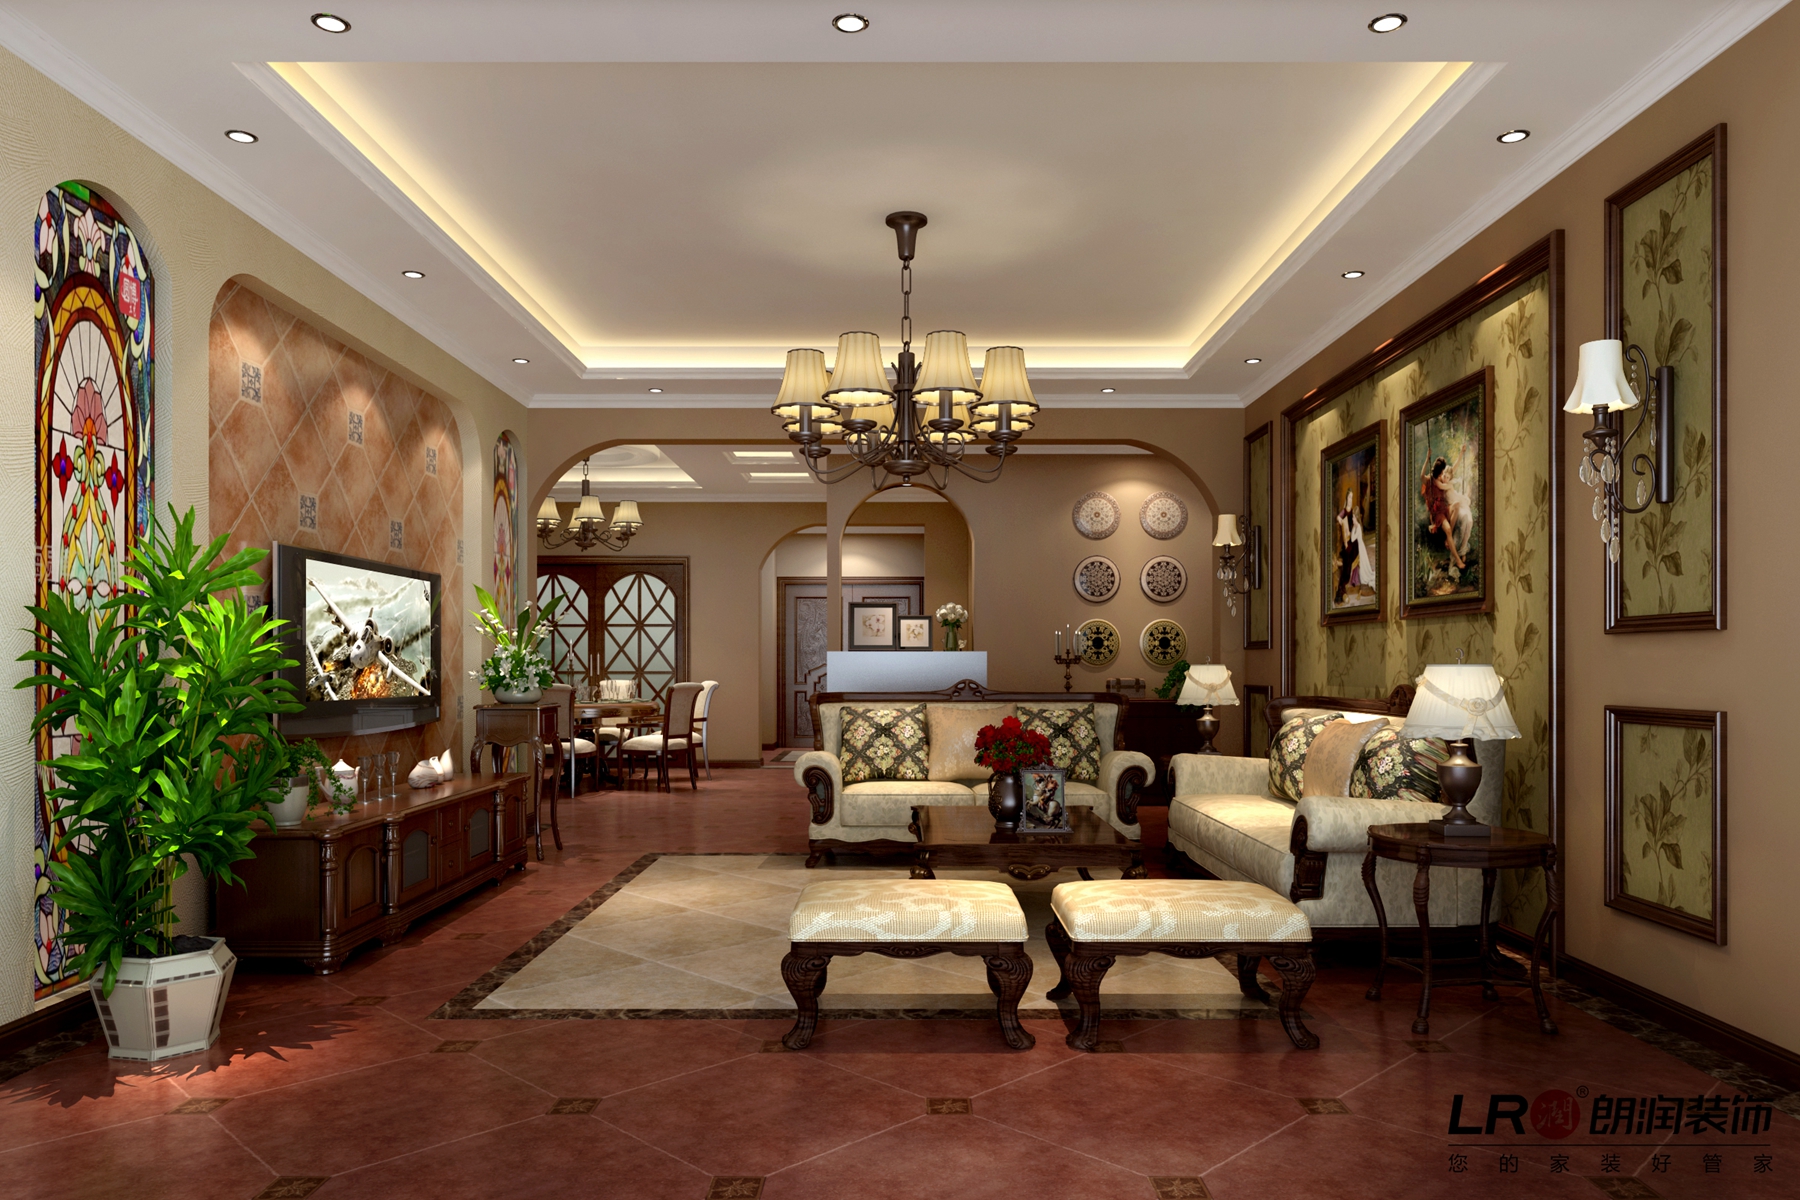 温馨 浪漫 美式 旧房改造 228平 客厅图片来自用户5156624388在228平温馨浪漫美式家的分享